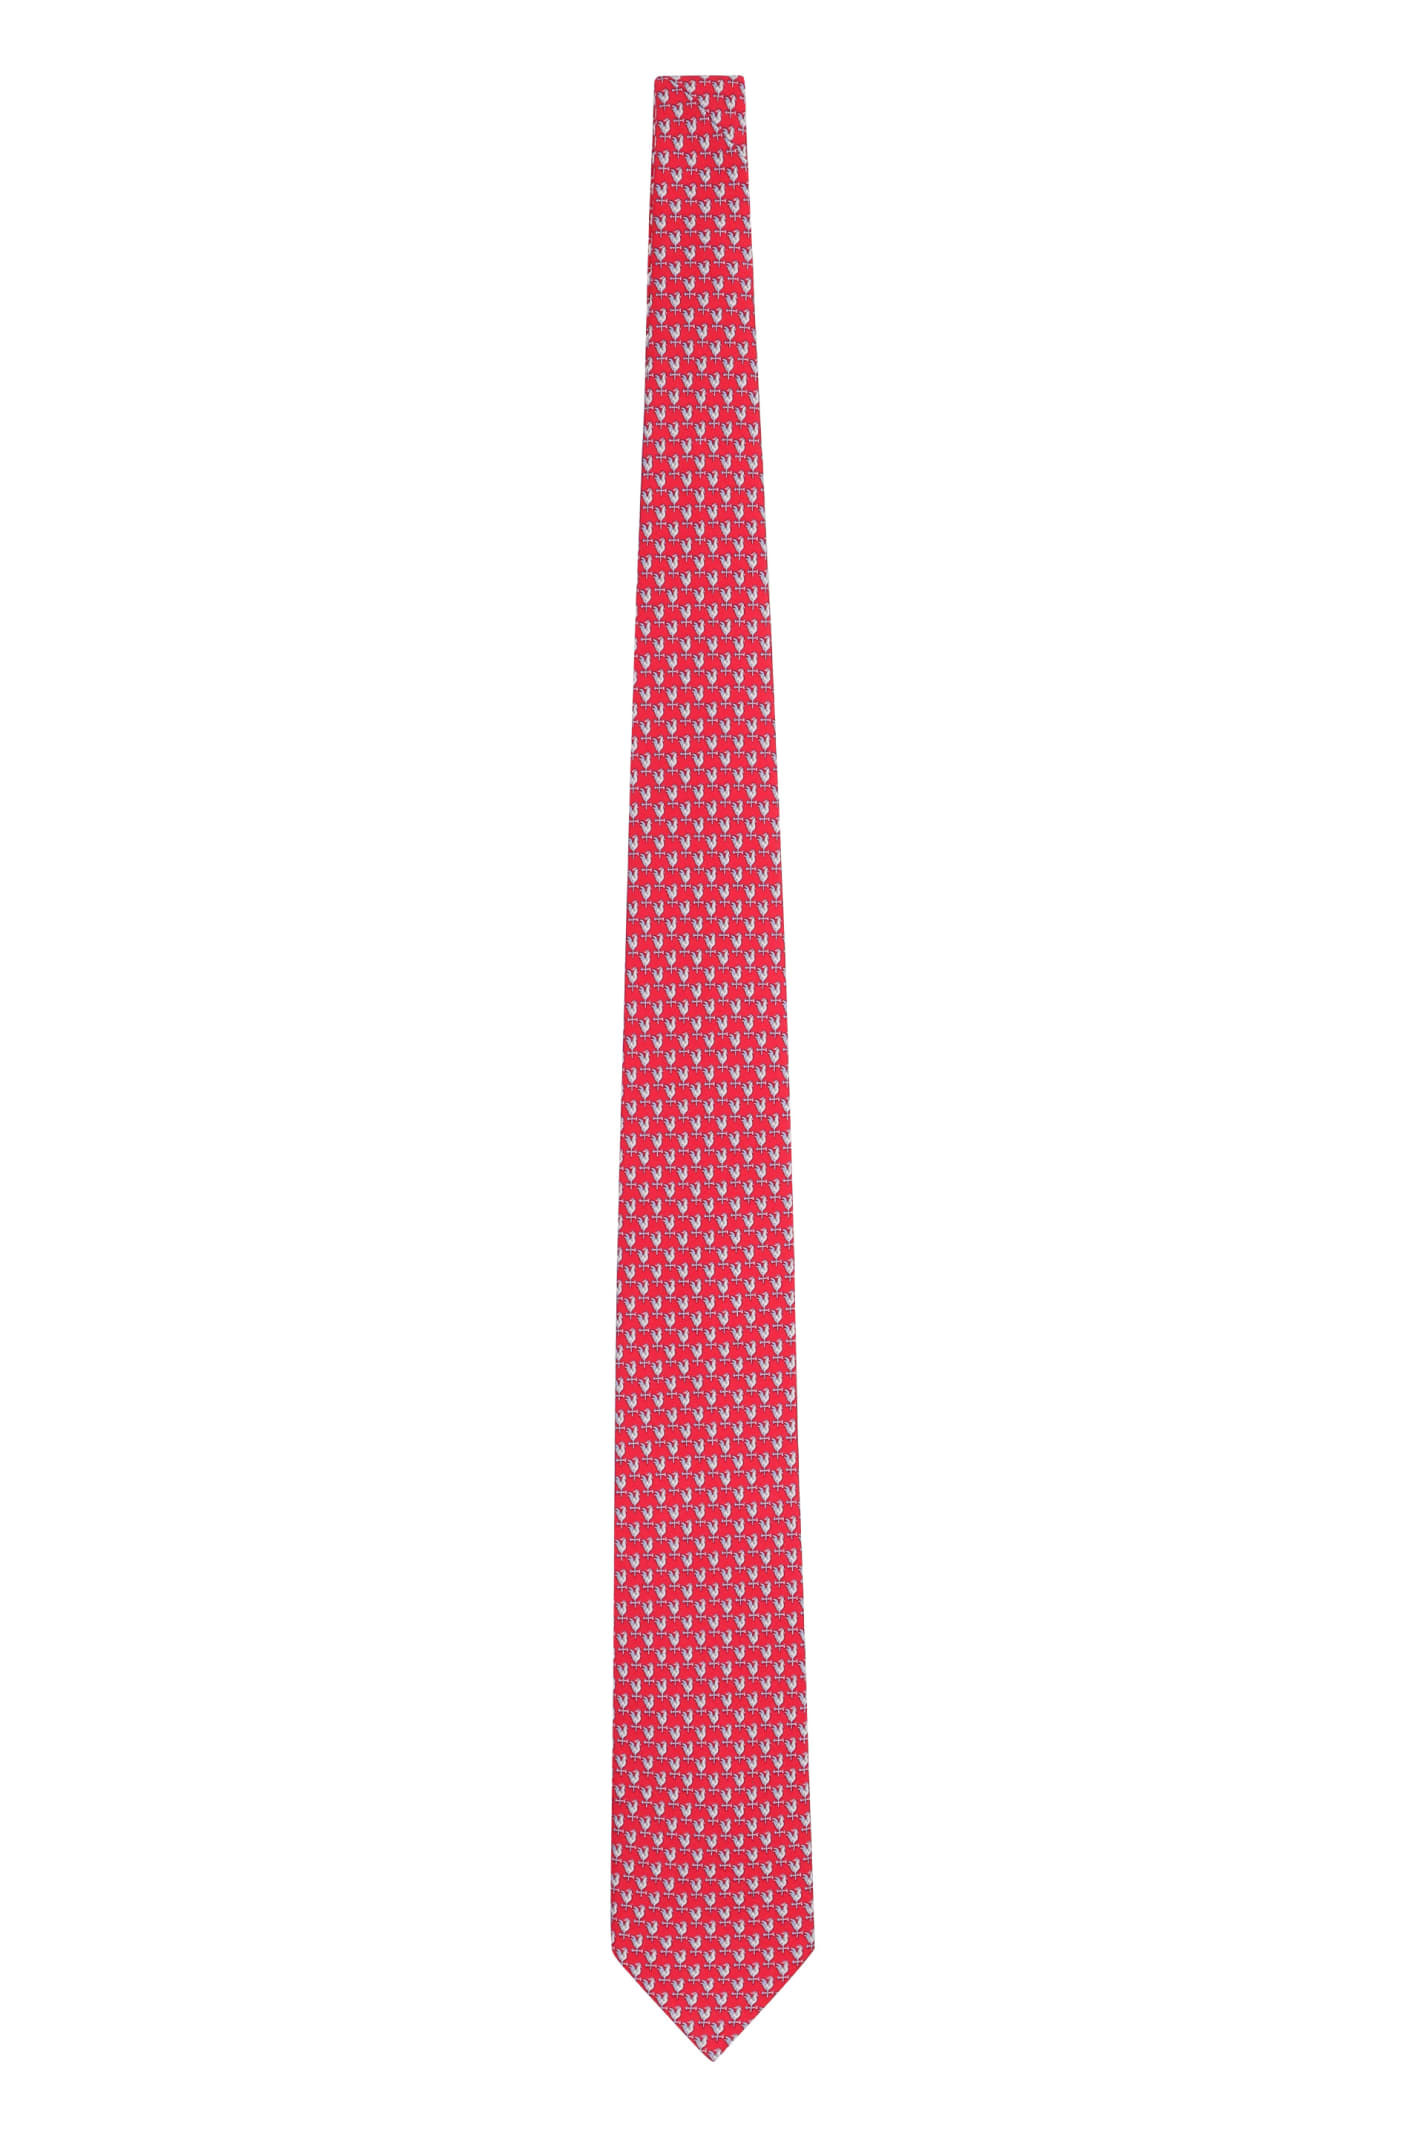 Ferragamo Printed Silk Tie In Red